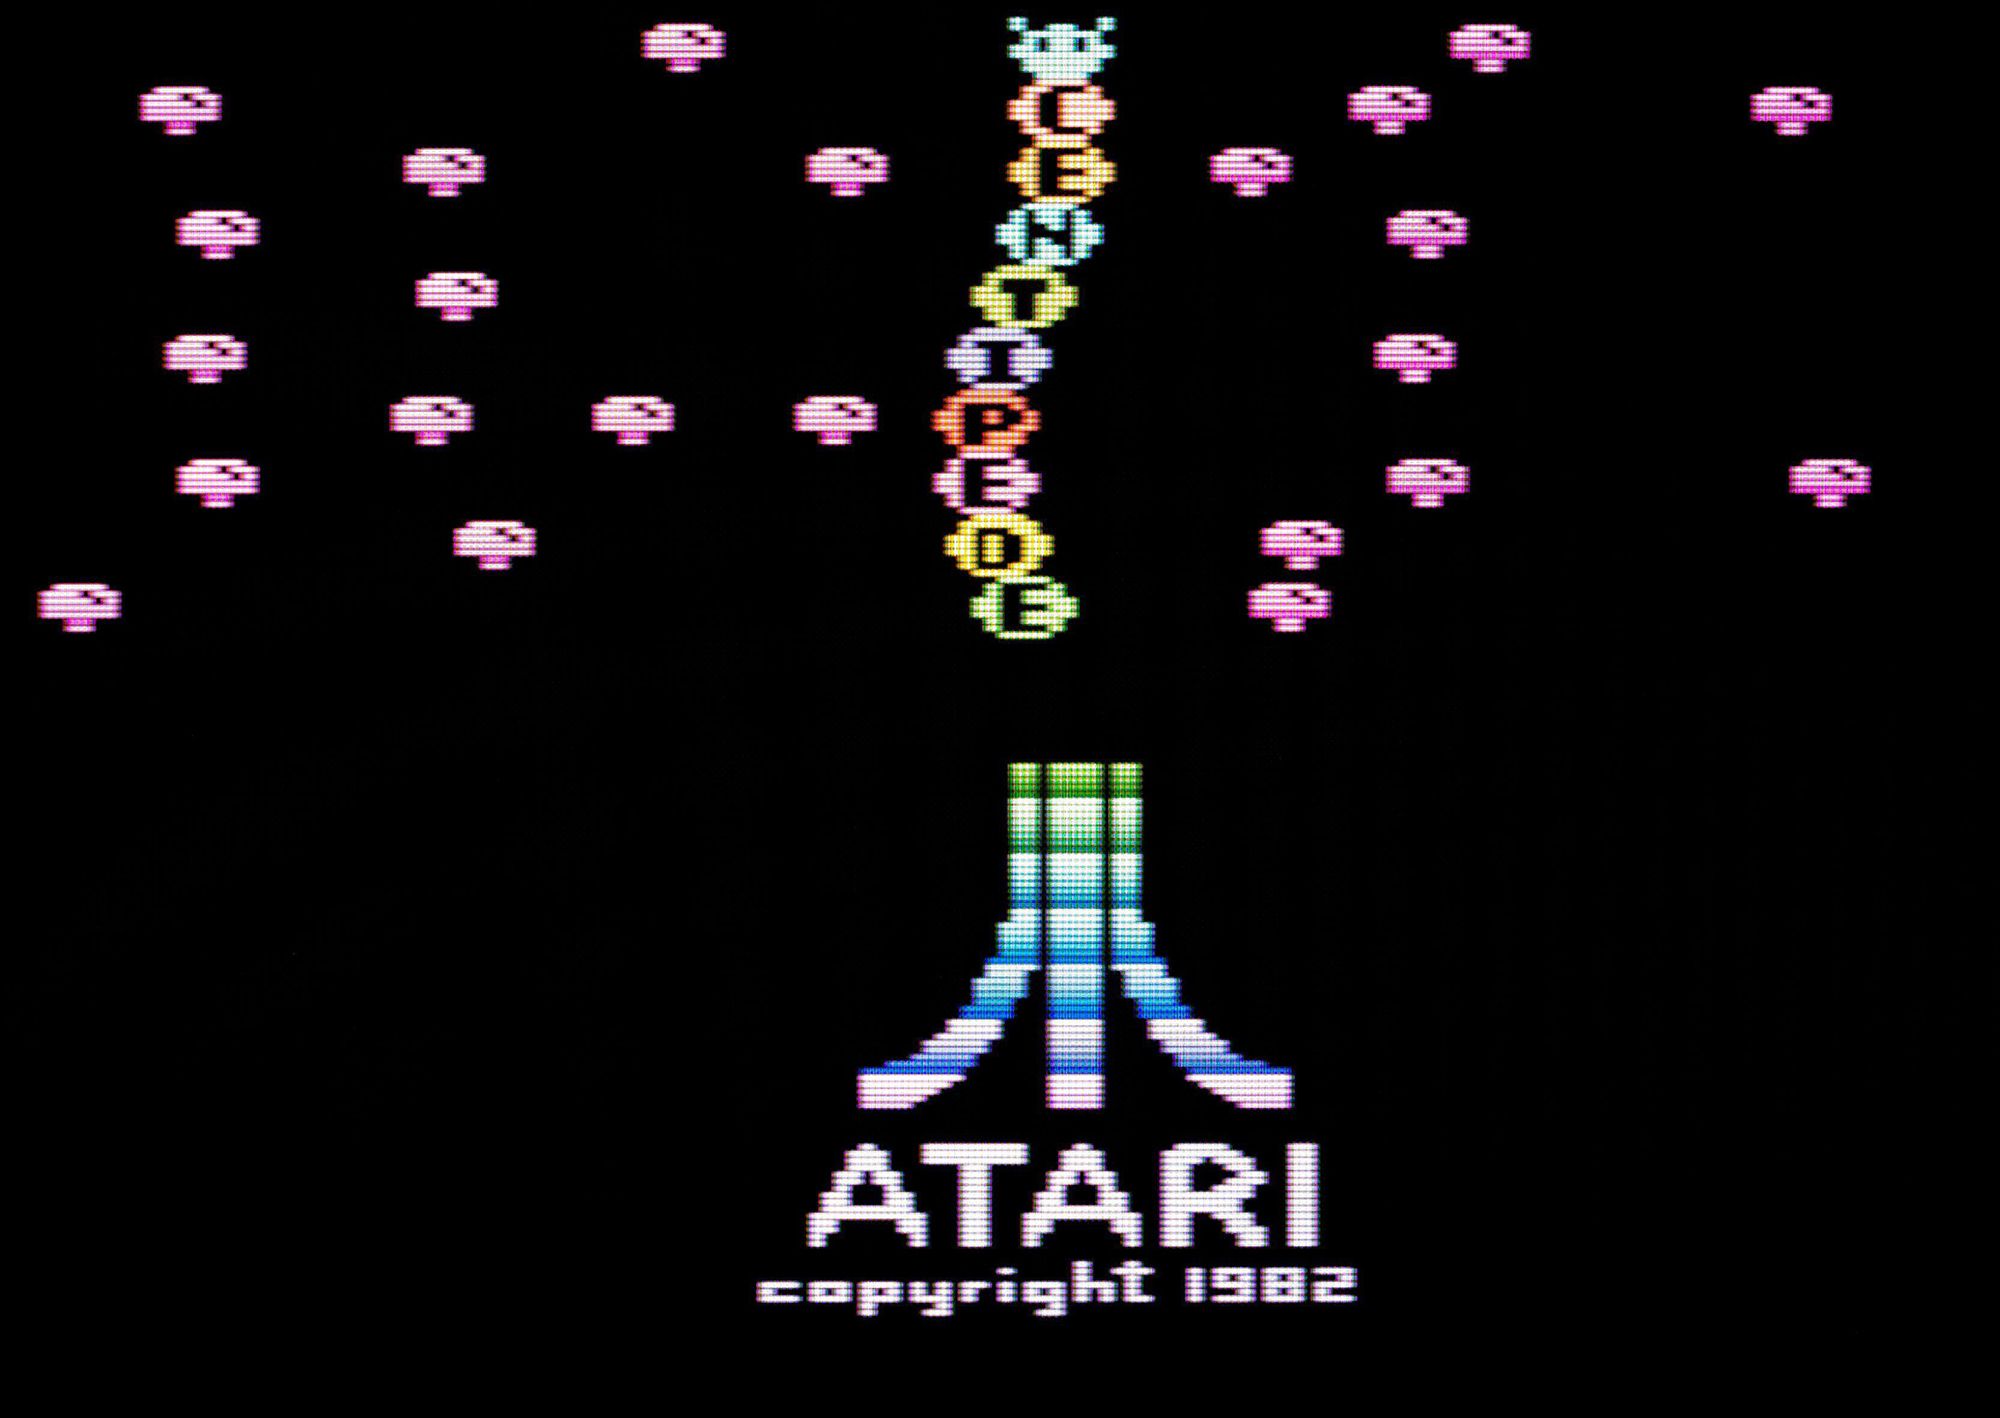 Atari 2600+ Arrives This November For A Retro Gaming Revival